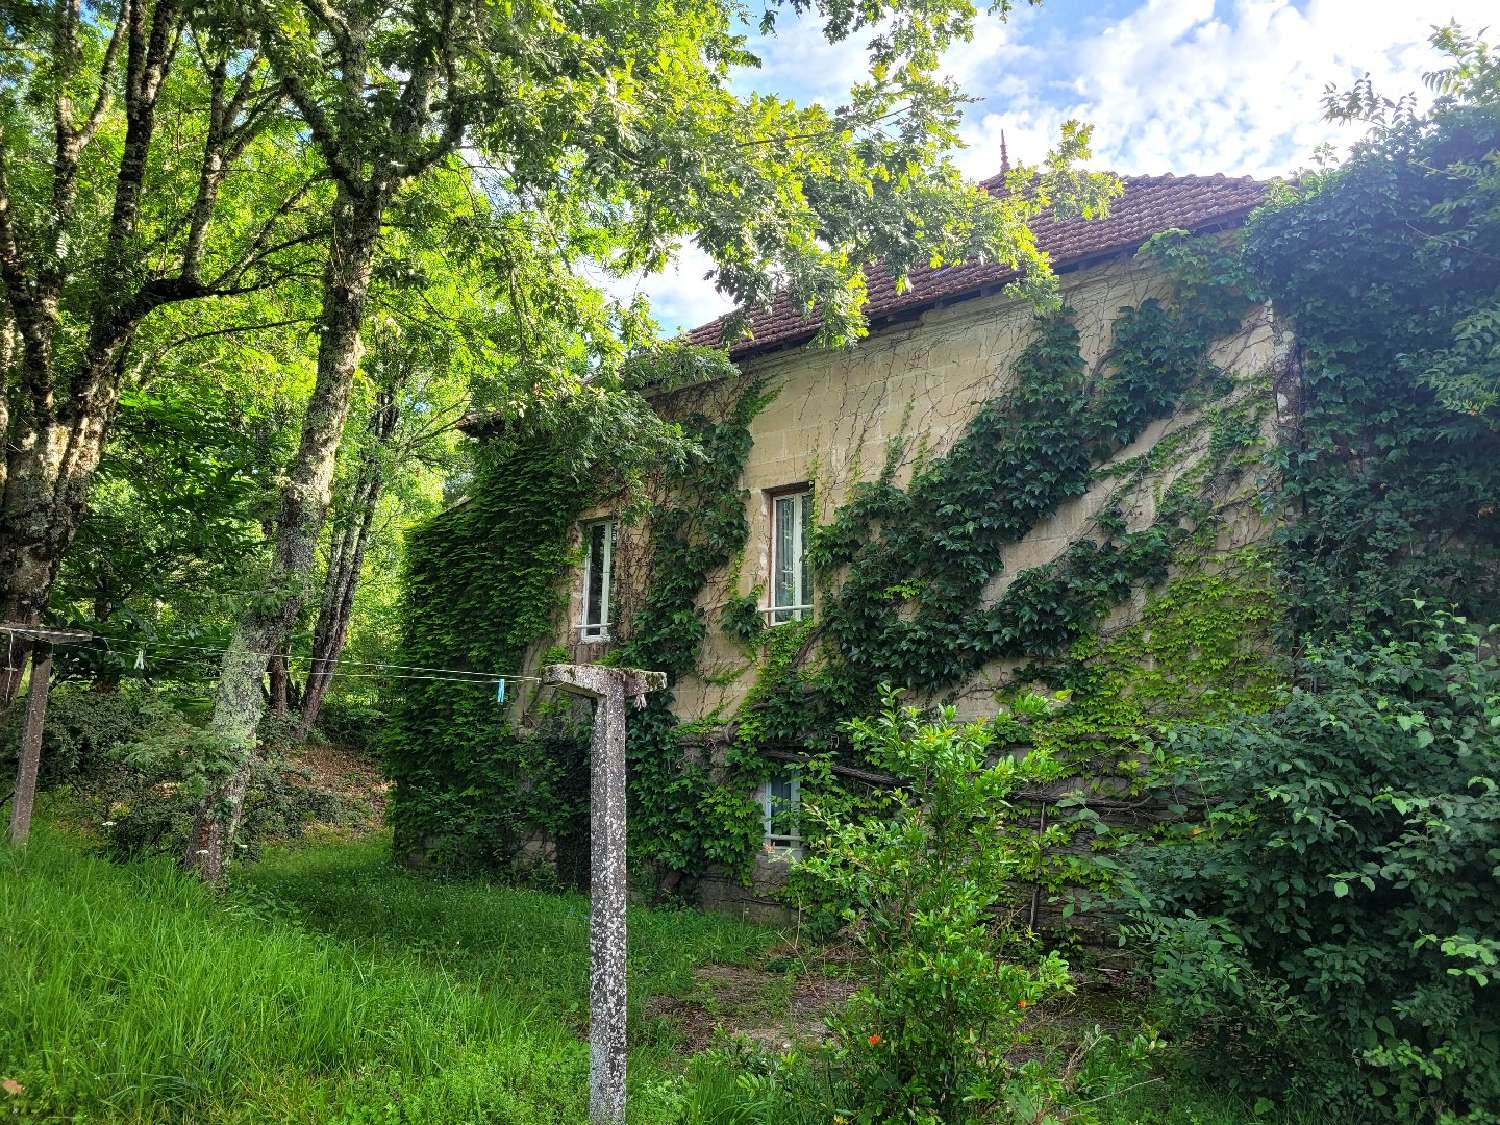  à vendre maison Vergt Dordogne 1